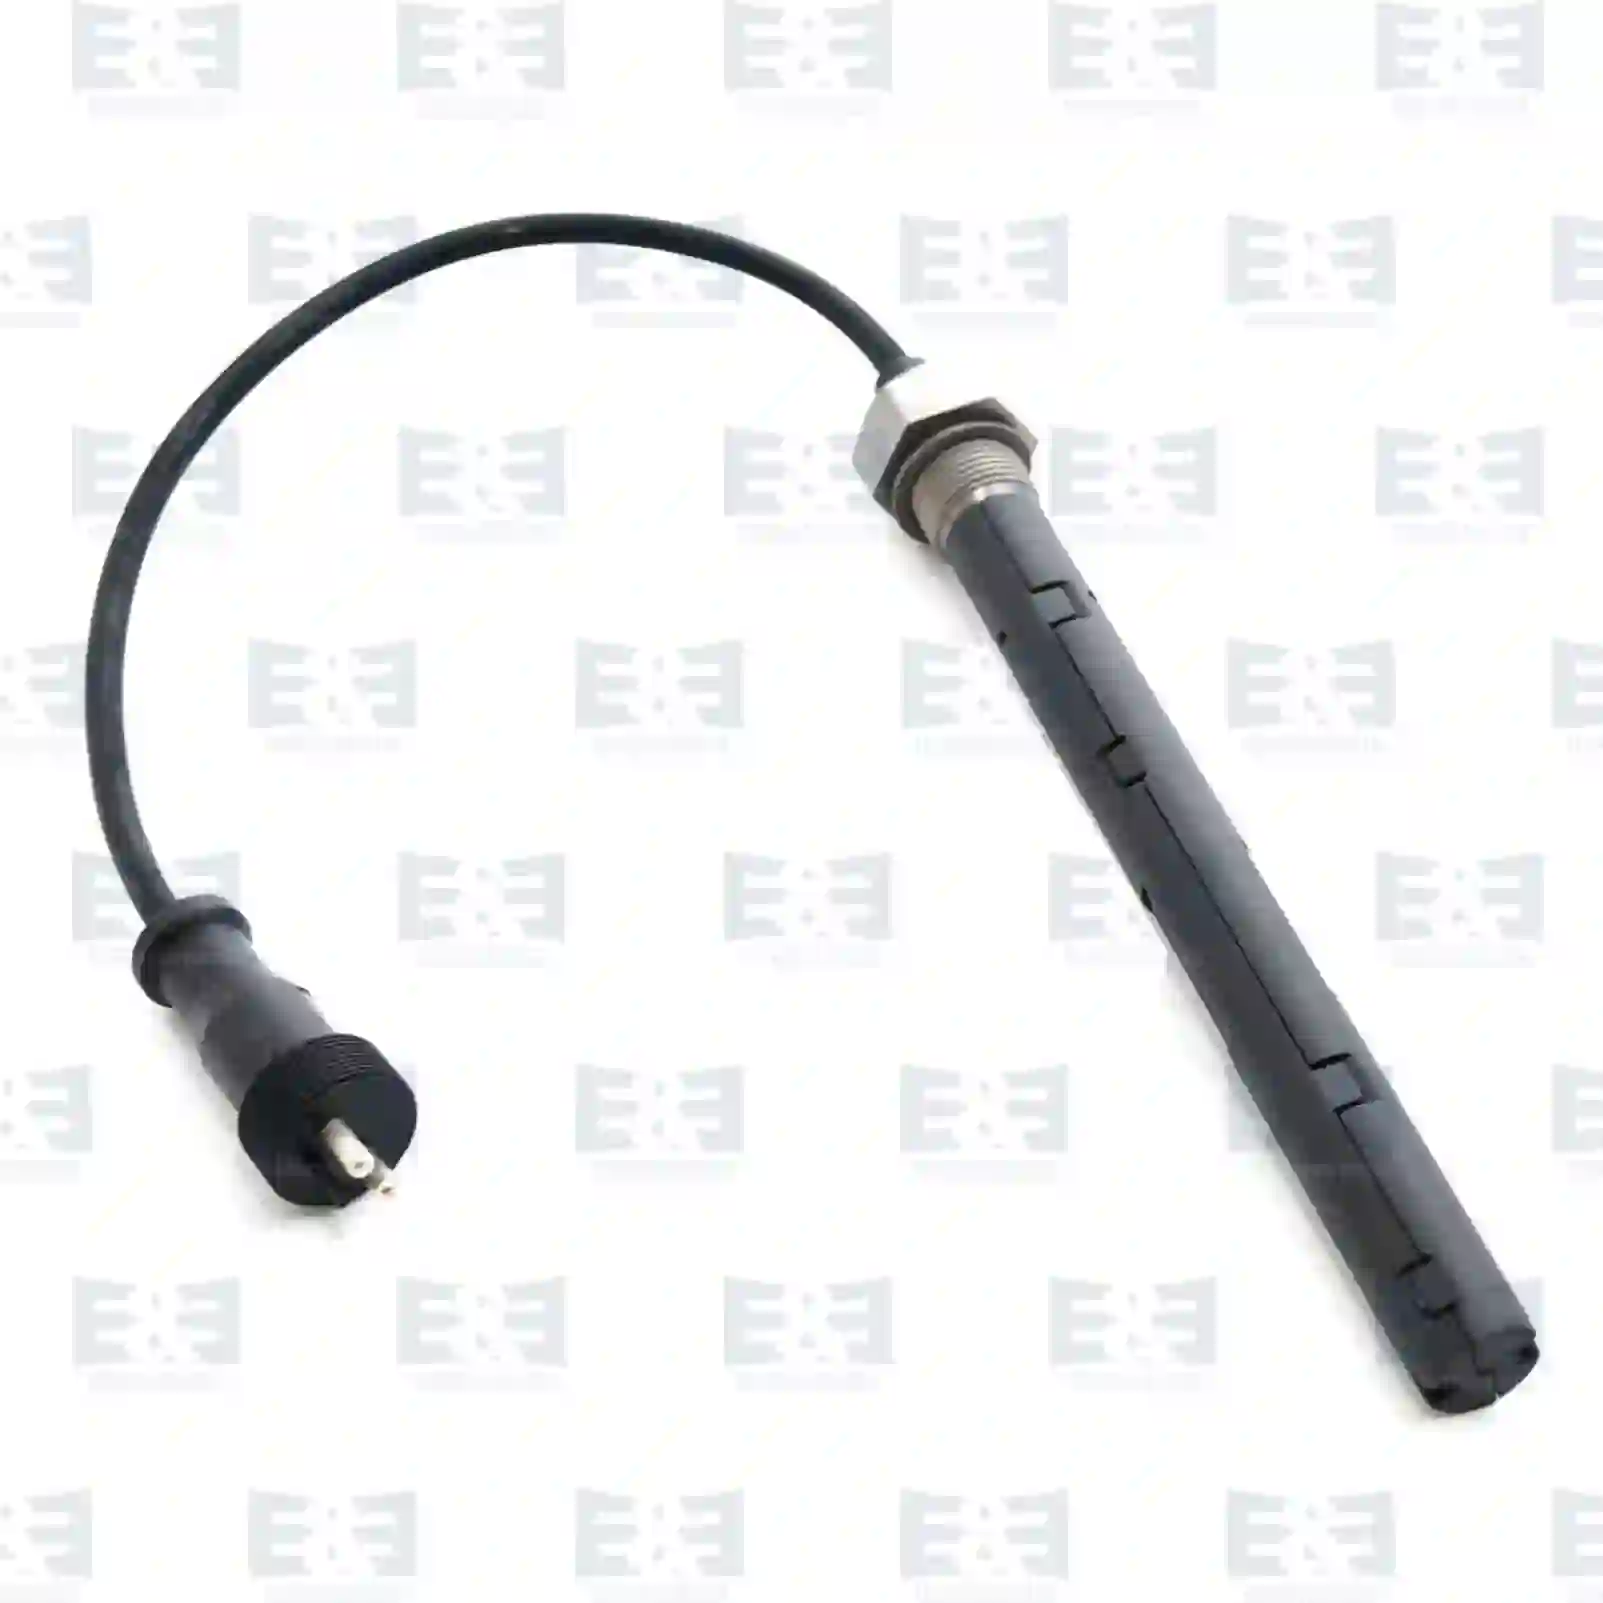  Oil level sensor || E&E Truck Spare Parts | Truck Spare Parts, Auotomotive Spare Parts